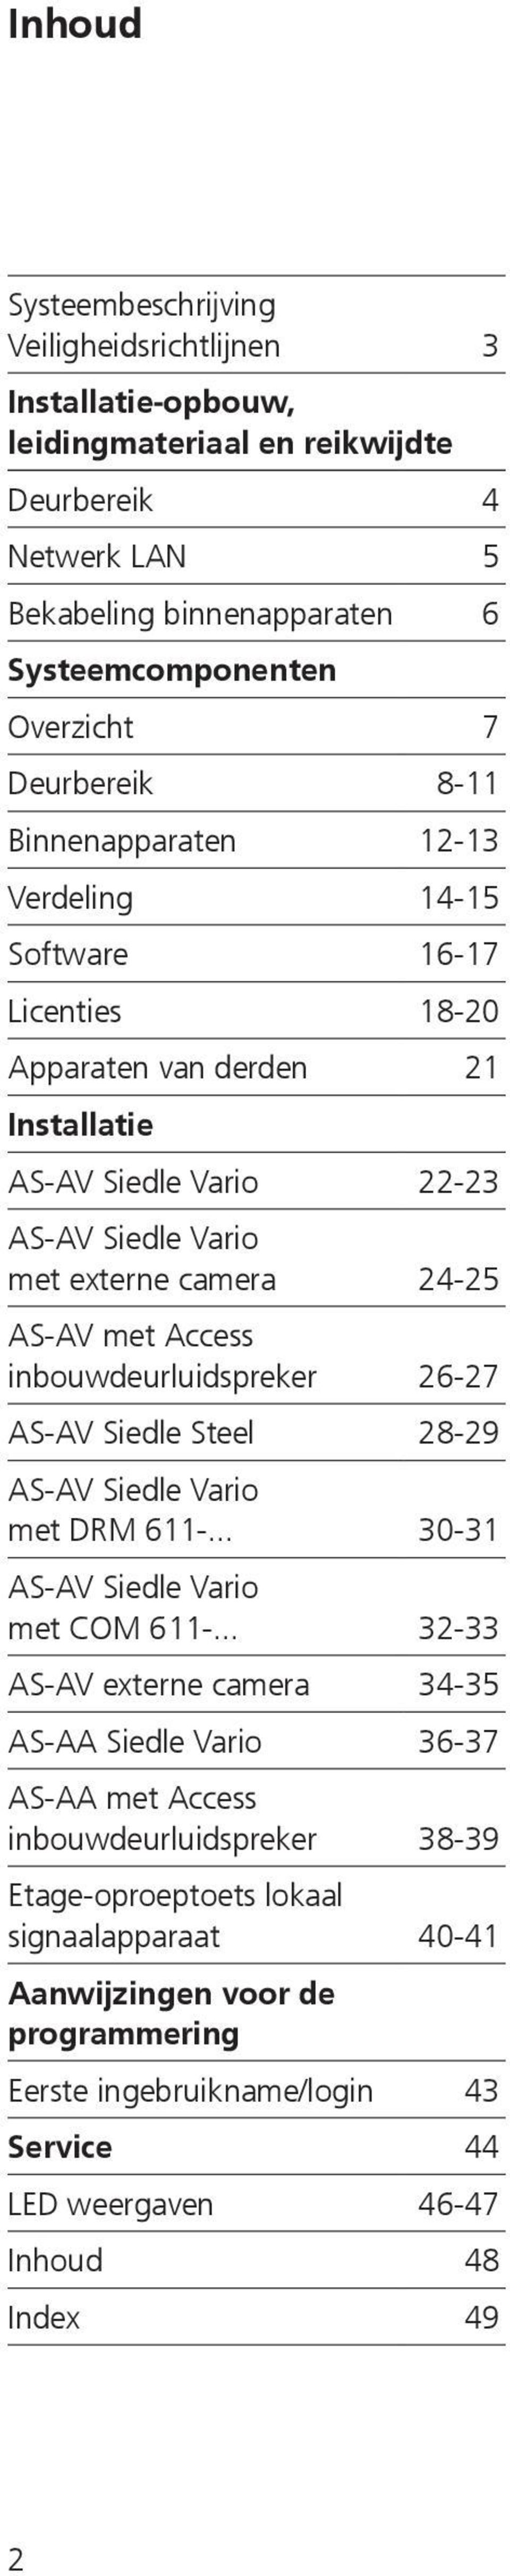 met Access inbouwdeurluidspreker 26-27 AS-AV Siedle Steel 28-29 AS-AV Siedle Vario met DRM 611-... 30-31 AS-AV Siedle Vario met COM 611-.